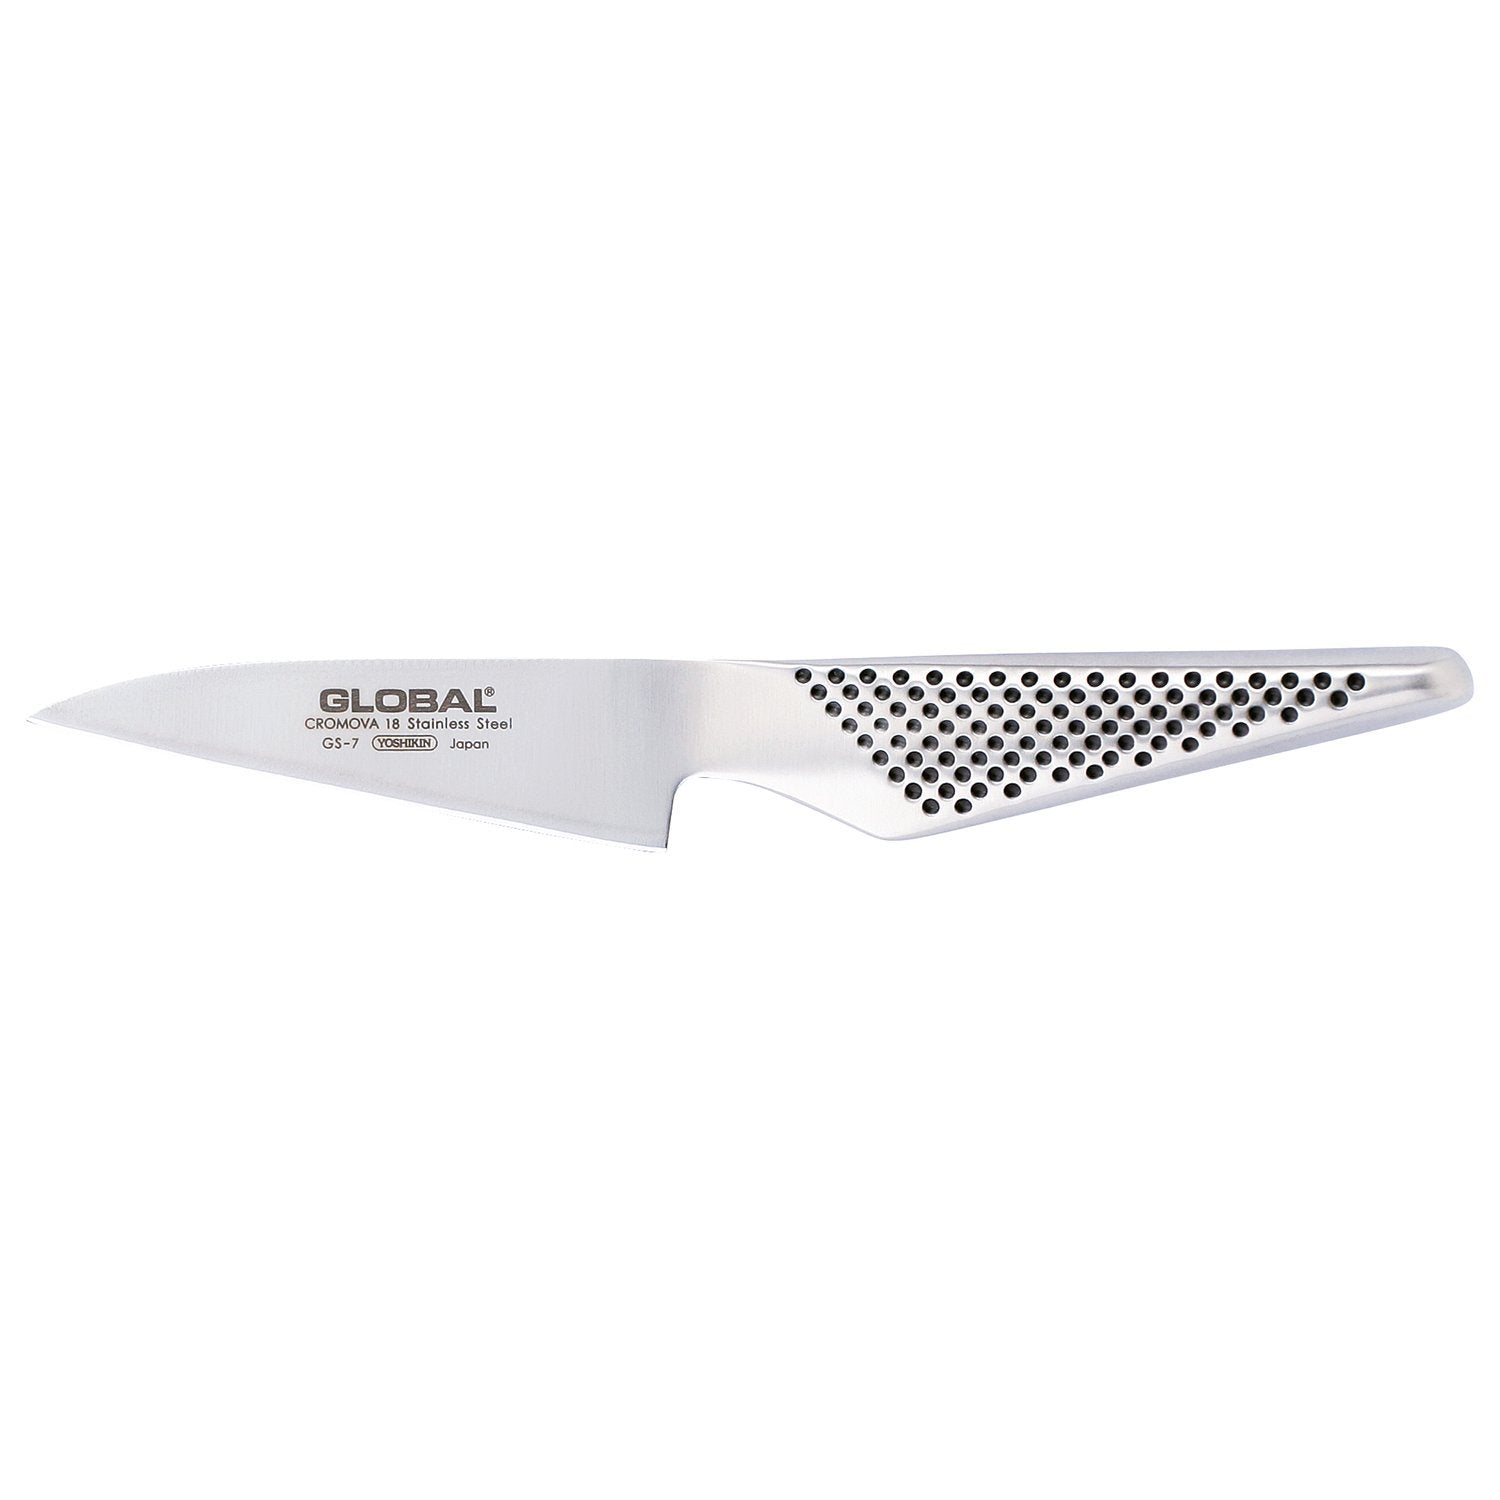 Global GS 7 Knife de paring, 10 cm